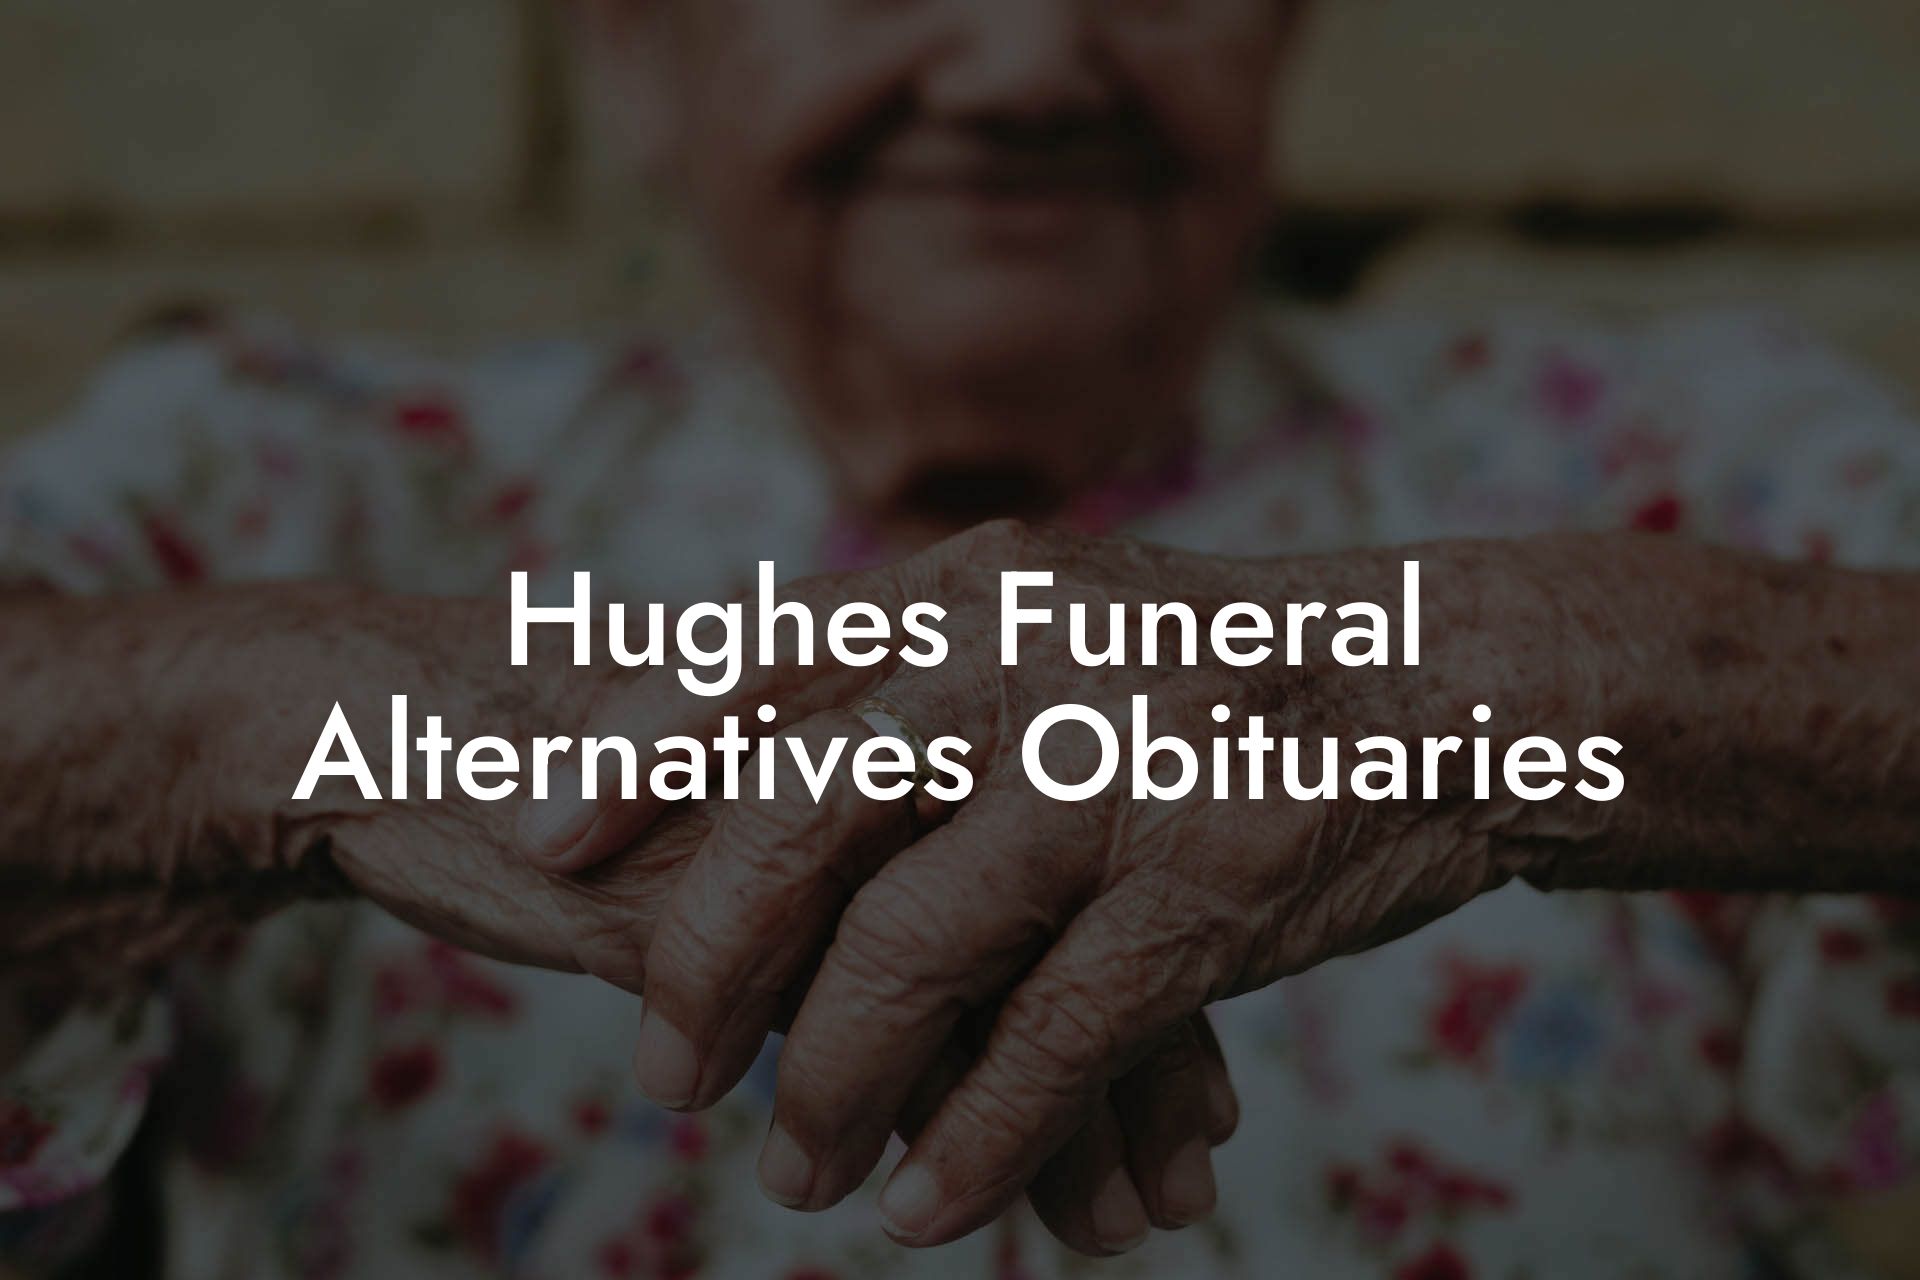 Hughes Funeral Alternatives Obituaries